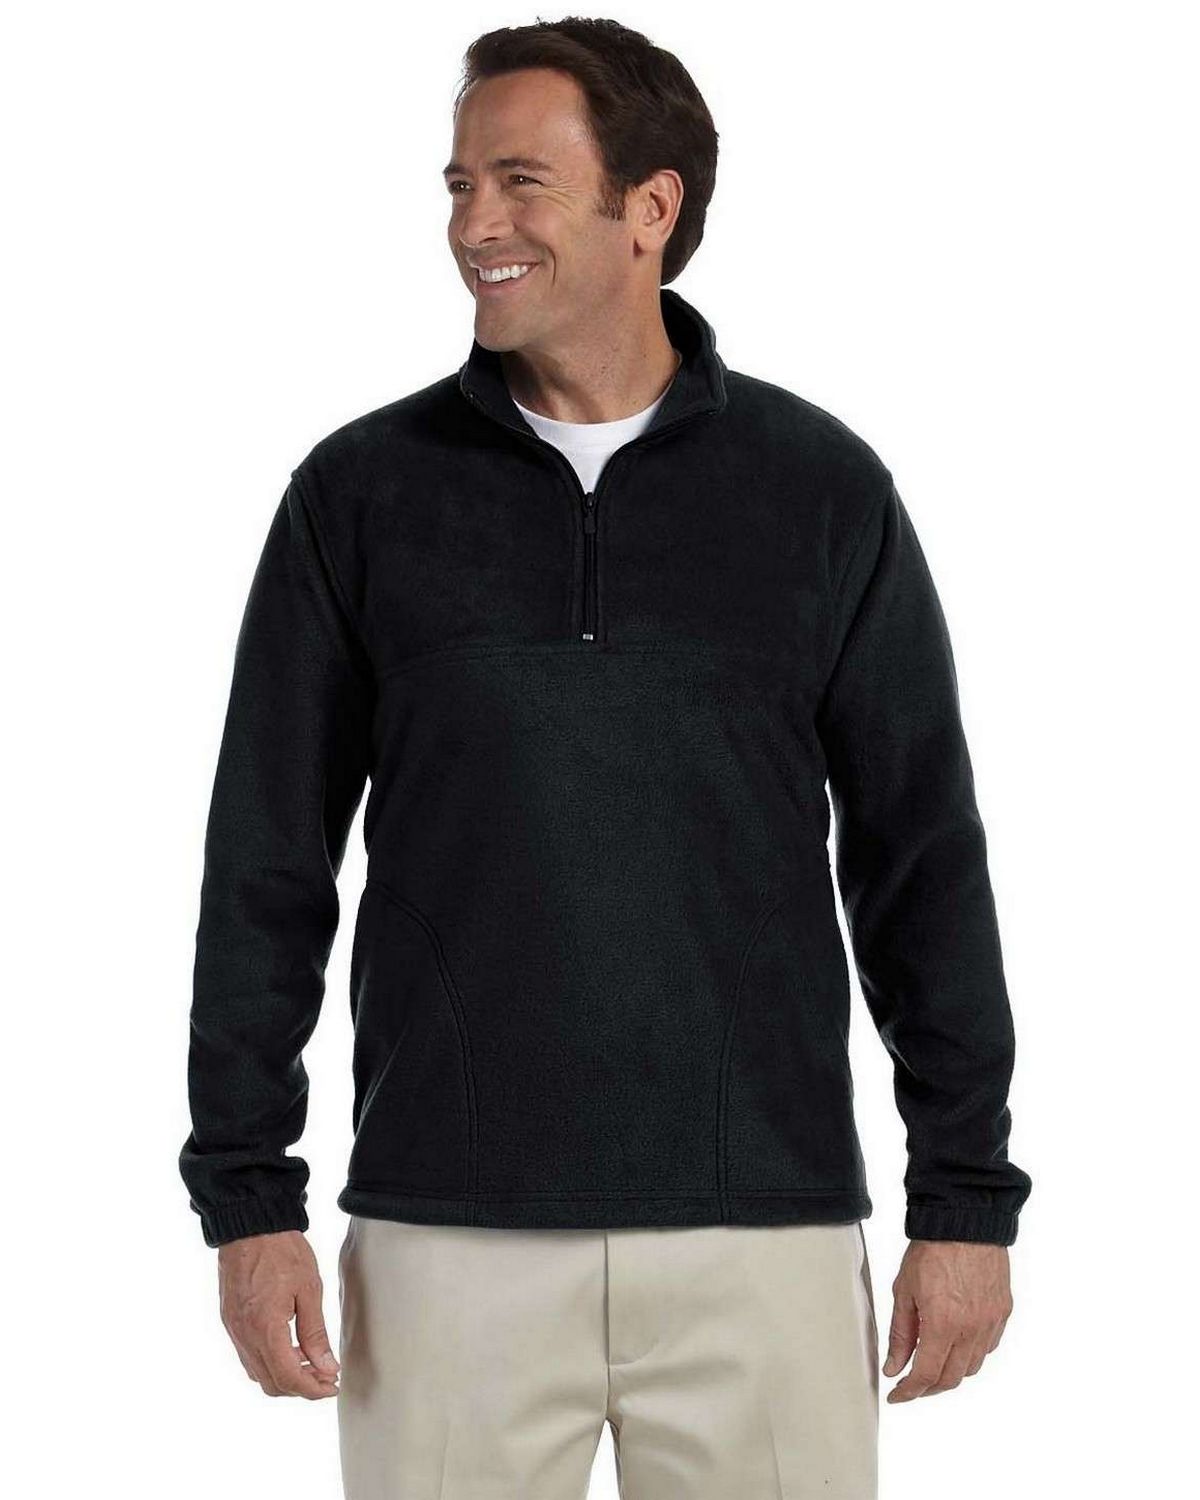 men's black quarter zip fleece